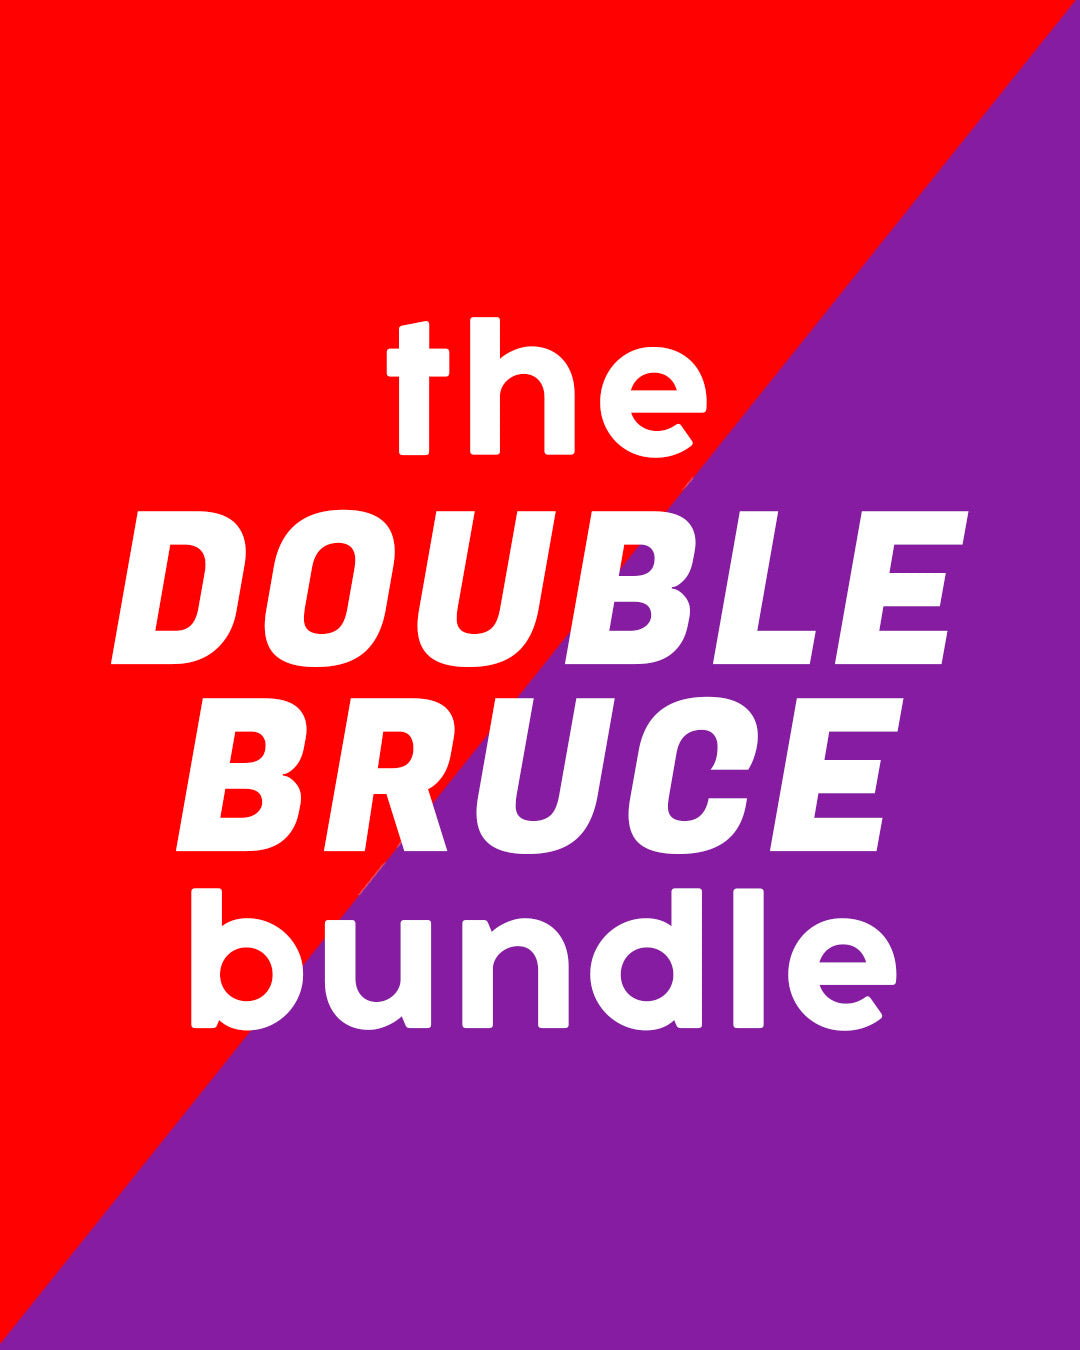 The Double Bruce Bundle